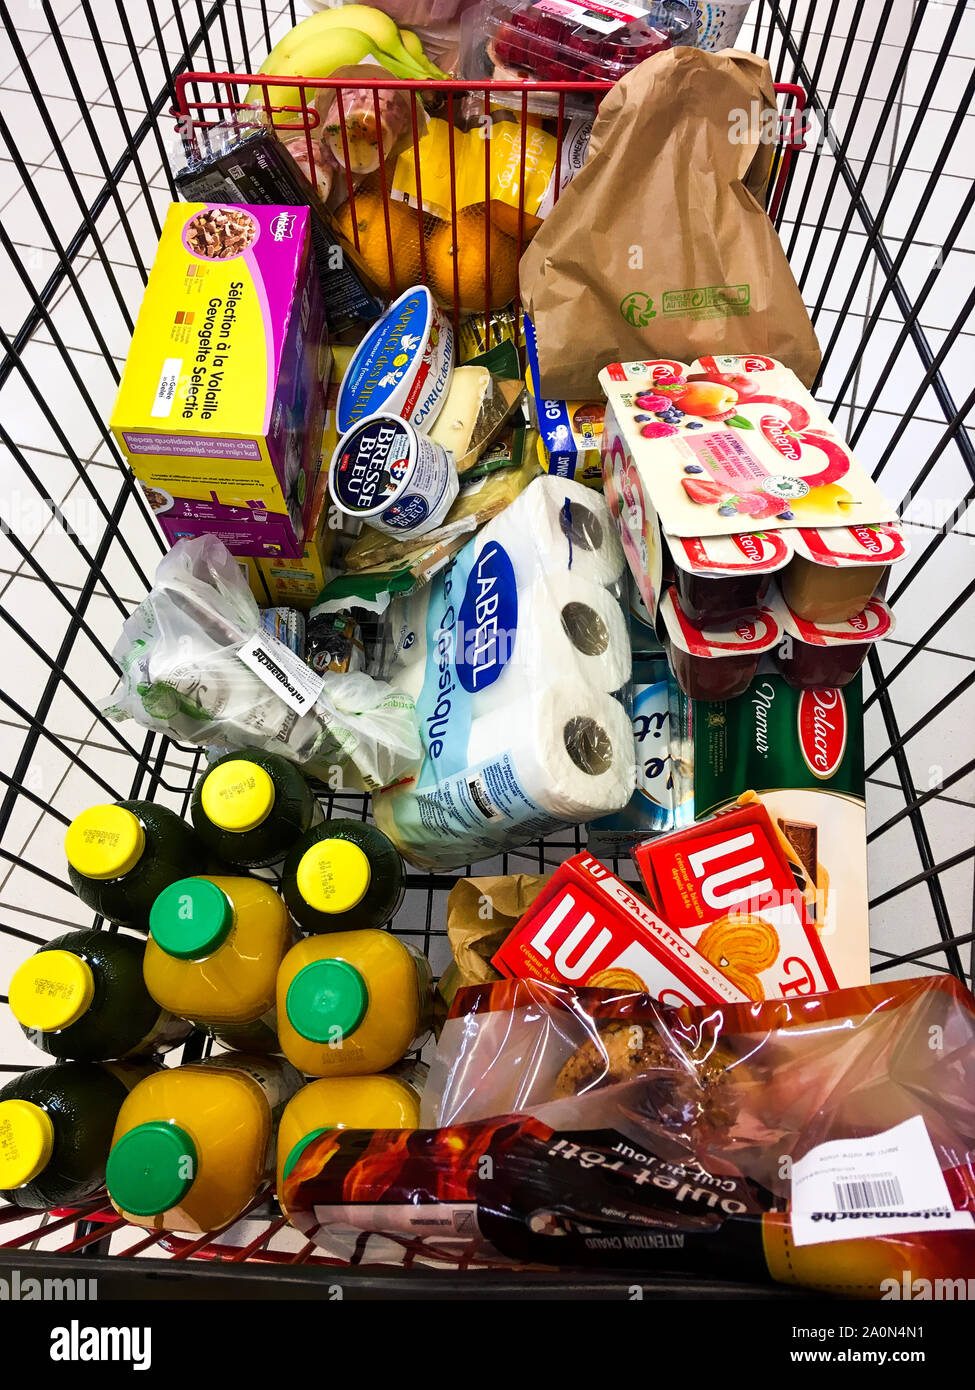 Las compras en el supermercado, Lyon, Francia. Foto de stock